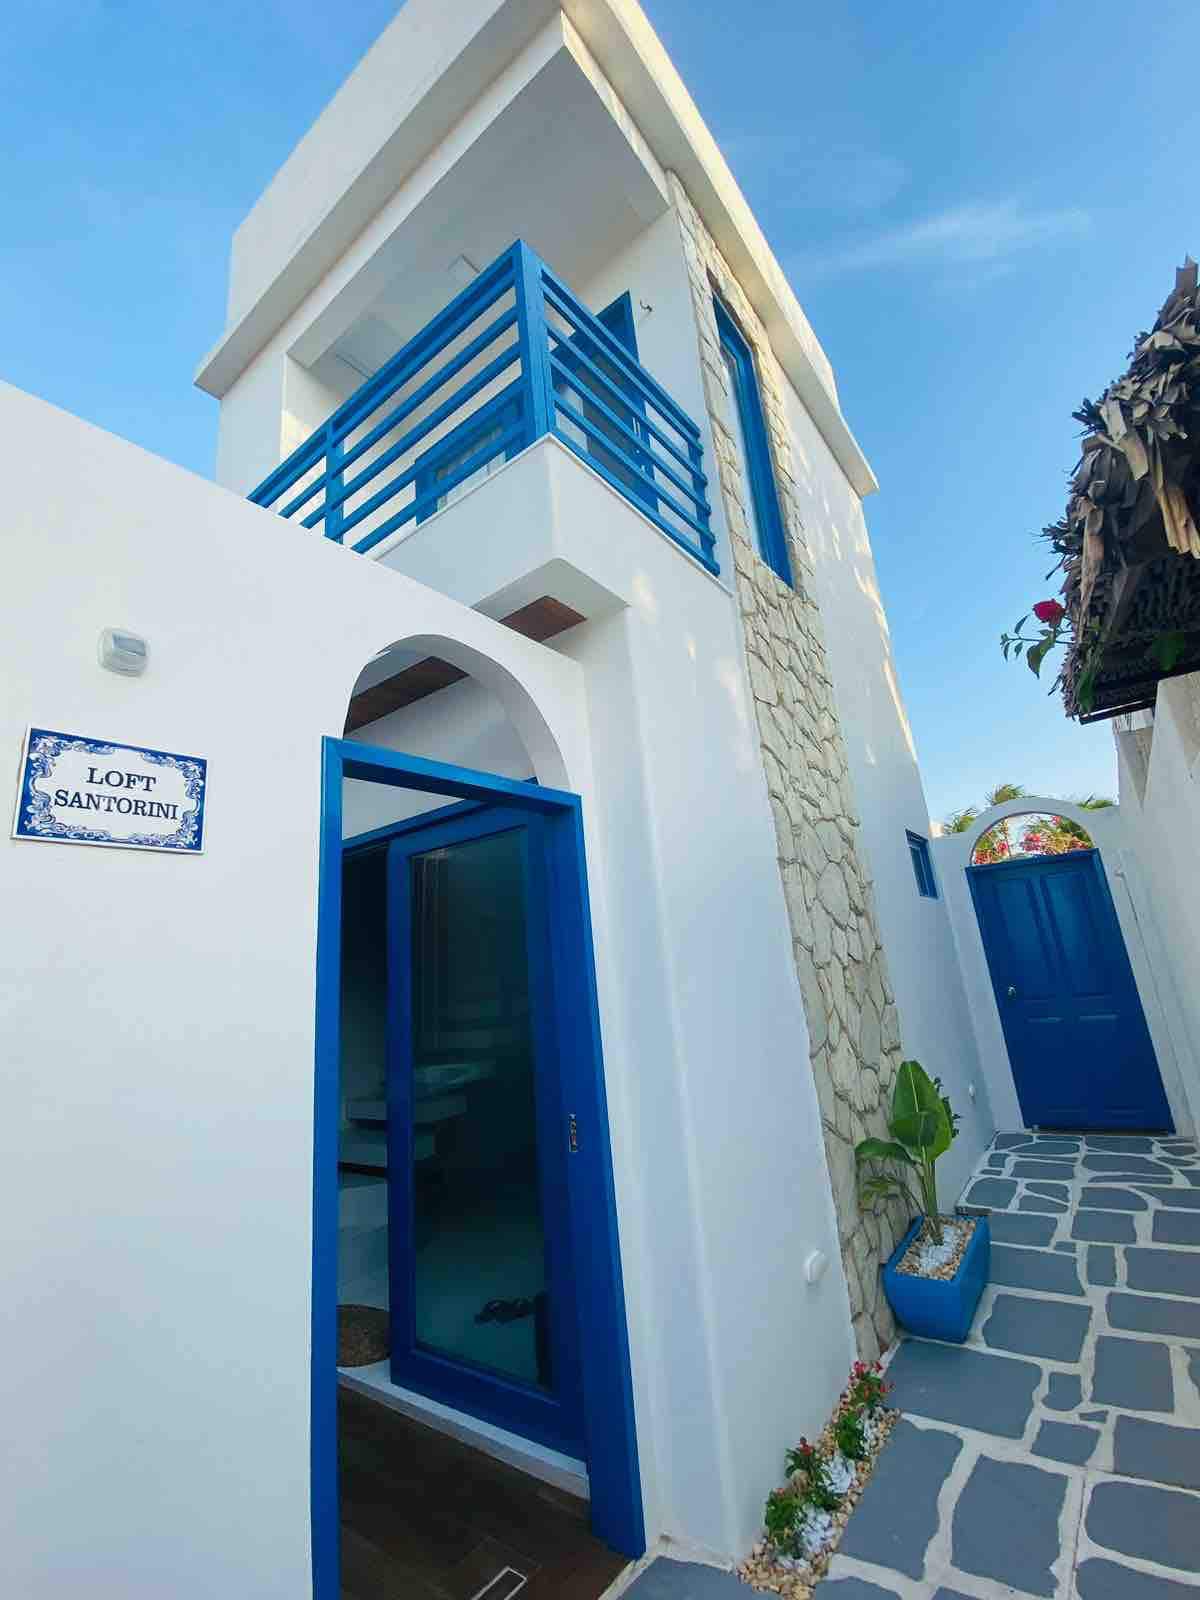 Mediterranee Residence - Loft Santorini